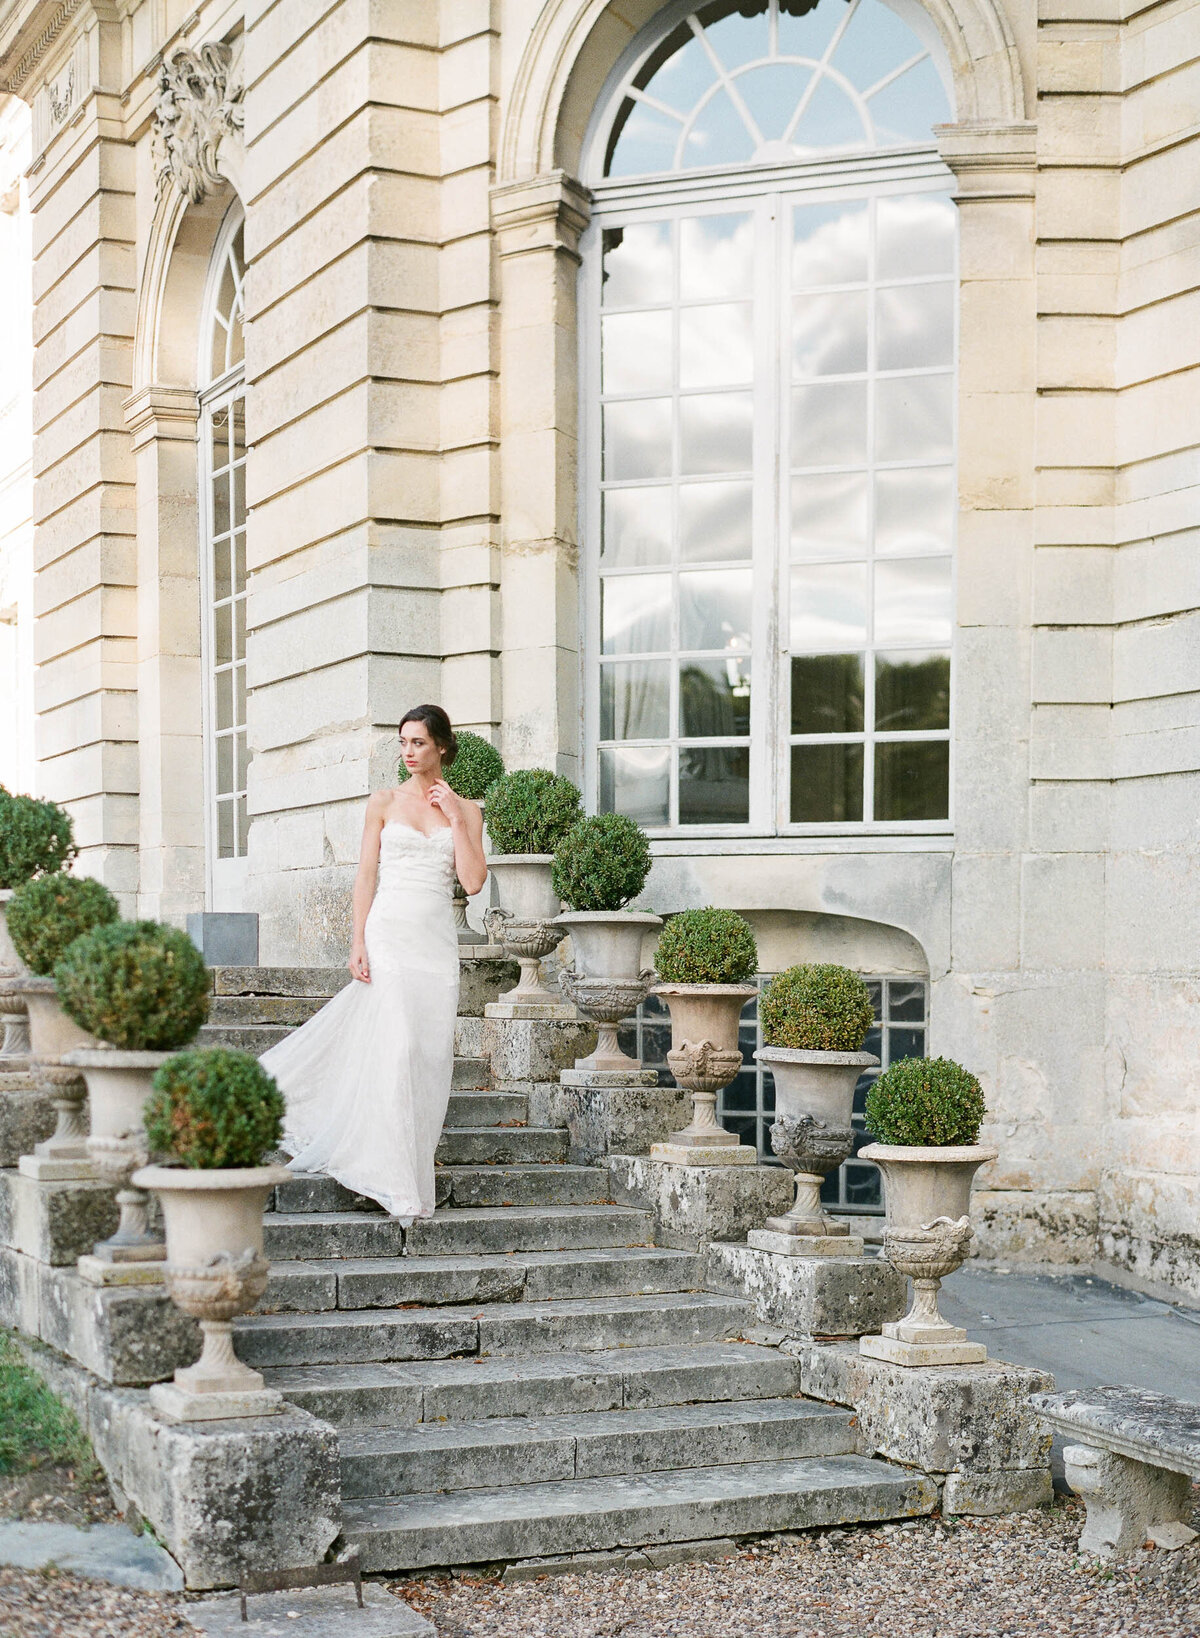 Alexandra-Vonk-wedding-chateau-de-champlatreux-France-25